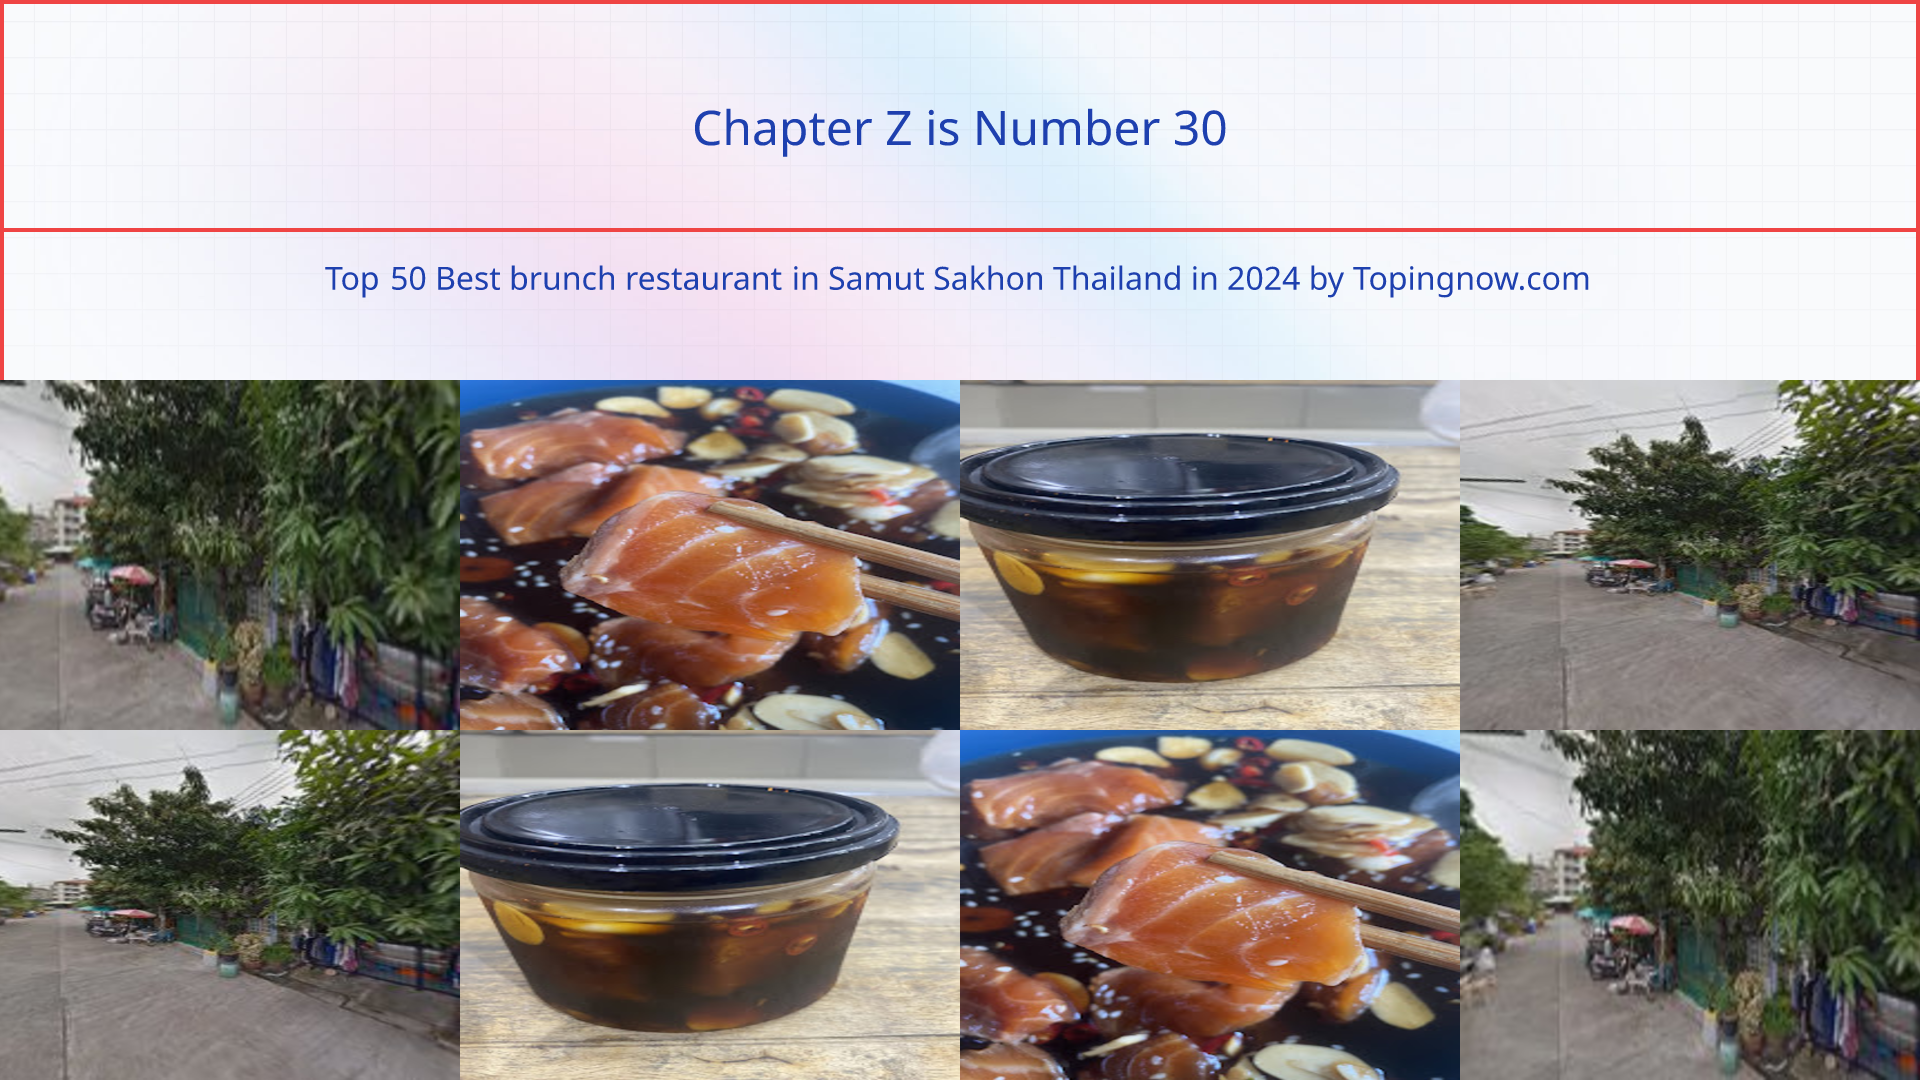 Chapter Z: Top 50 Best brunch restaurant in Samut Sakhon Thailand in 2024